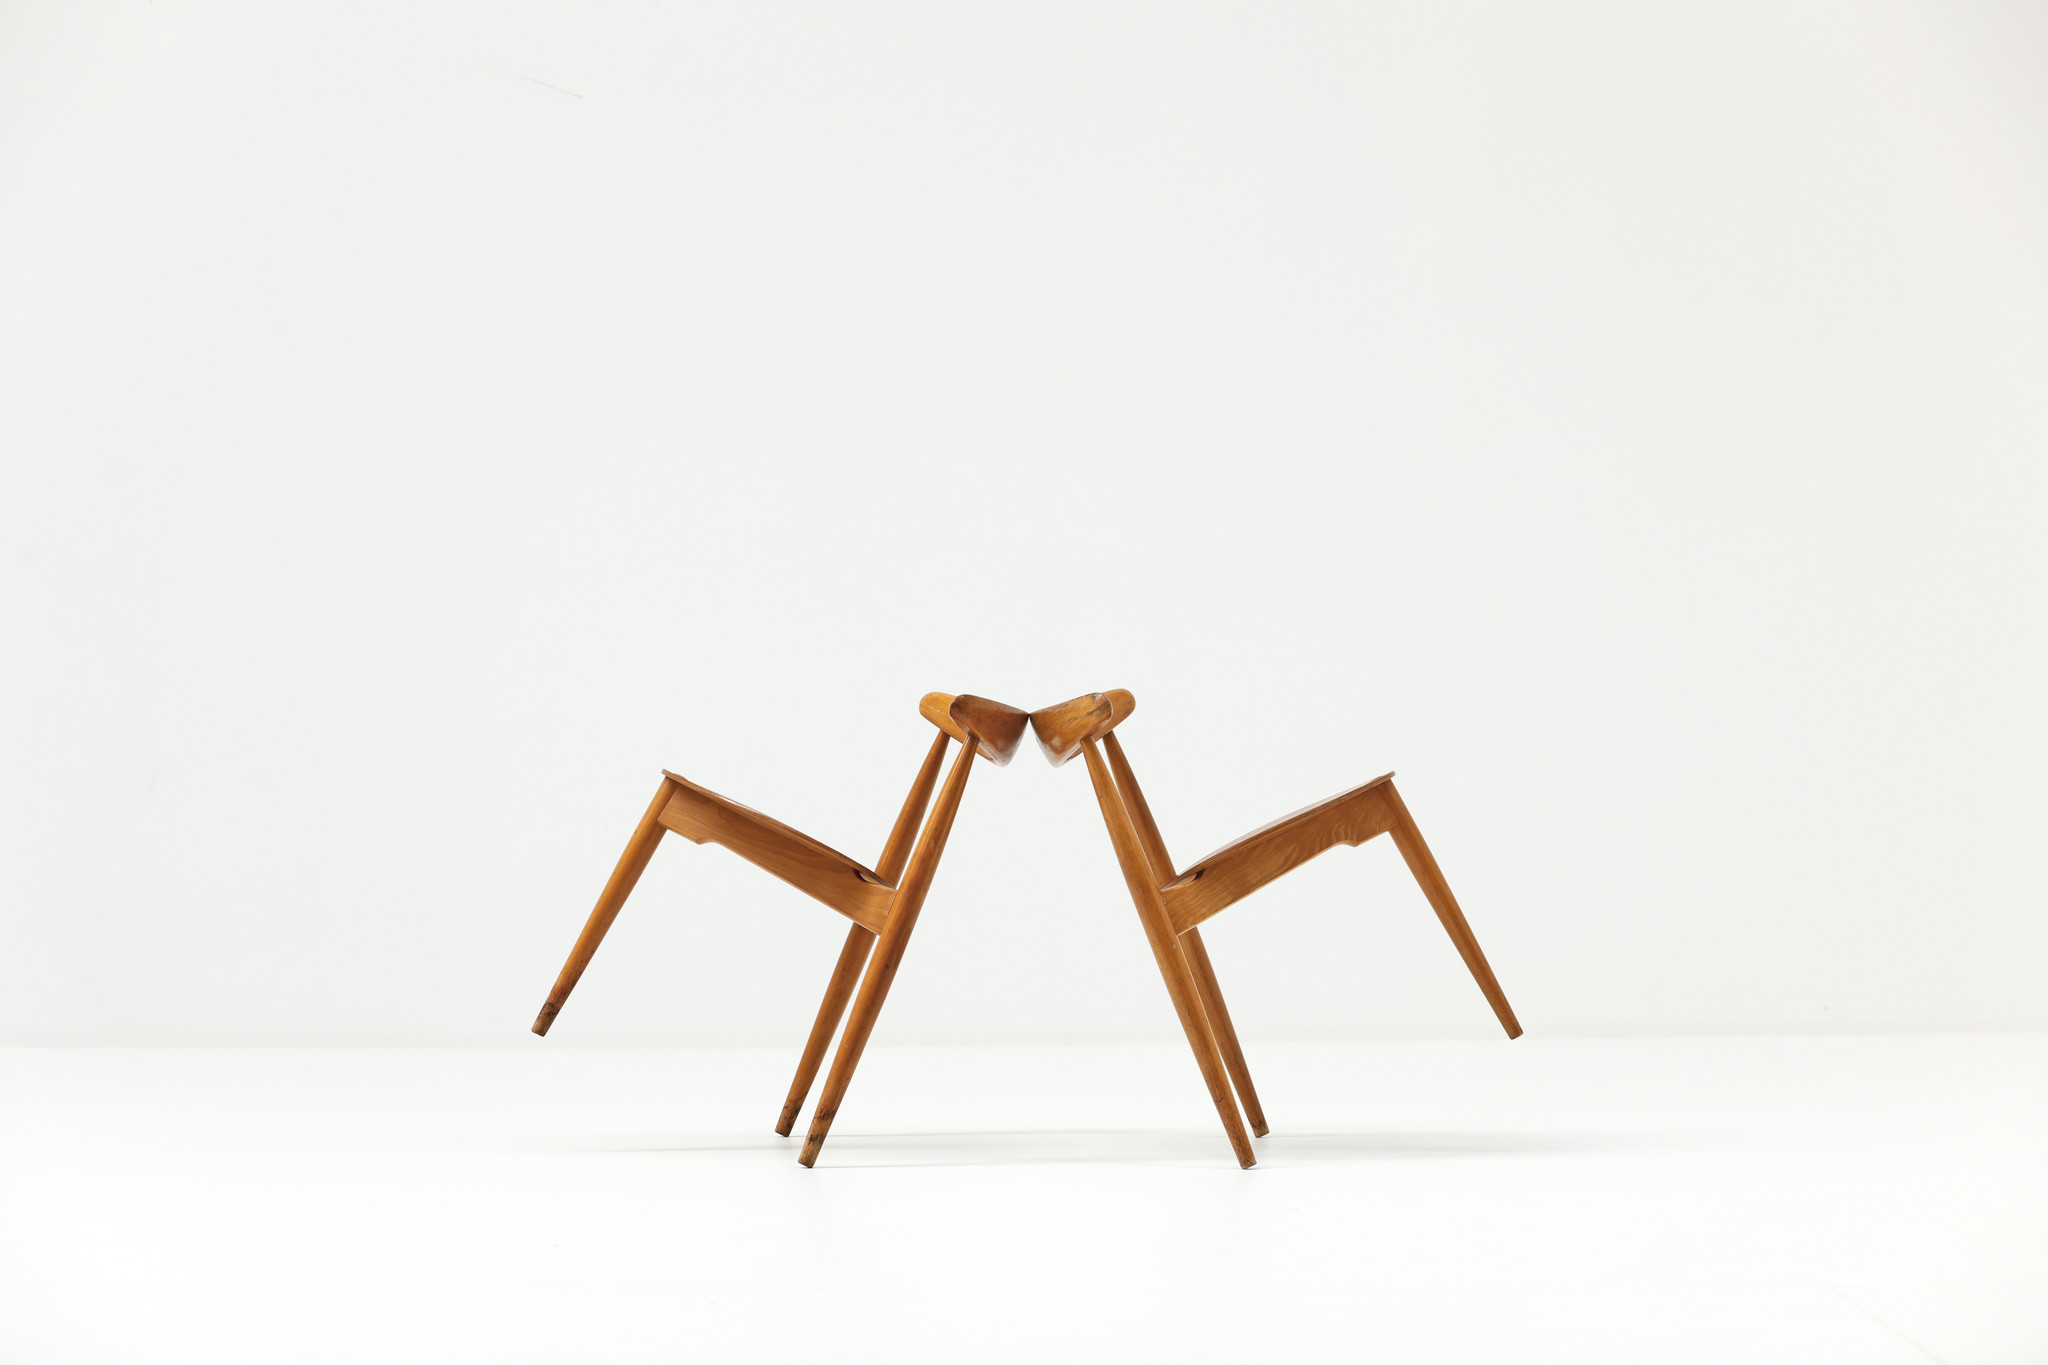 Set of 2 Oak and Teak Heart Chairs by Hans J. Wegner for Fritz Hansen, 1952